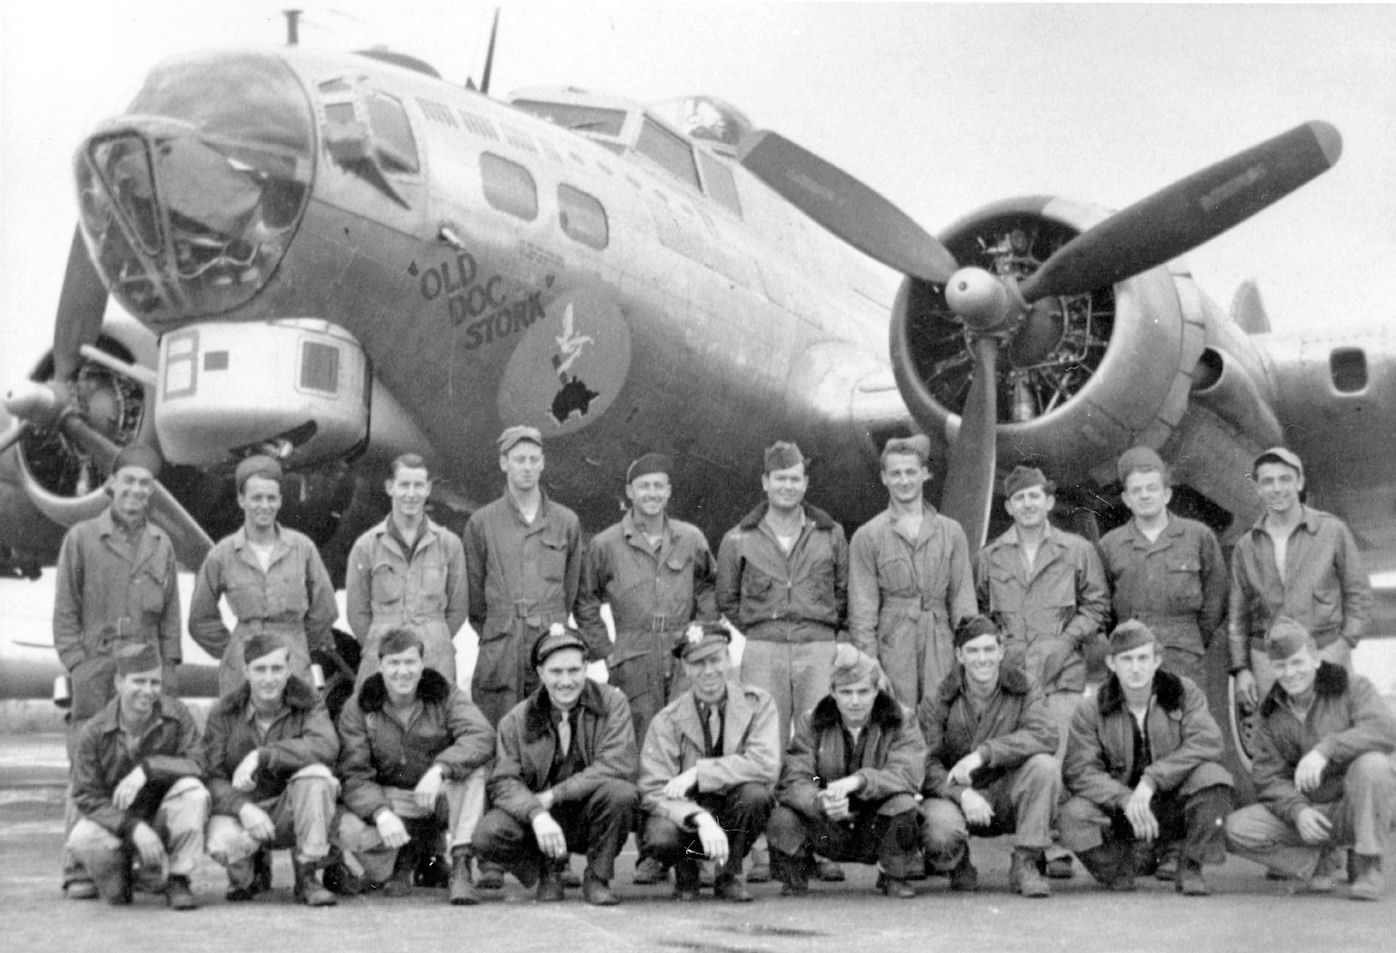 B-17 #44-83254 / Old Doc Stork